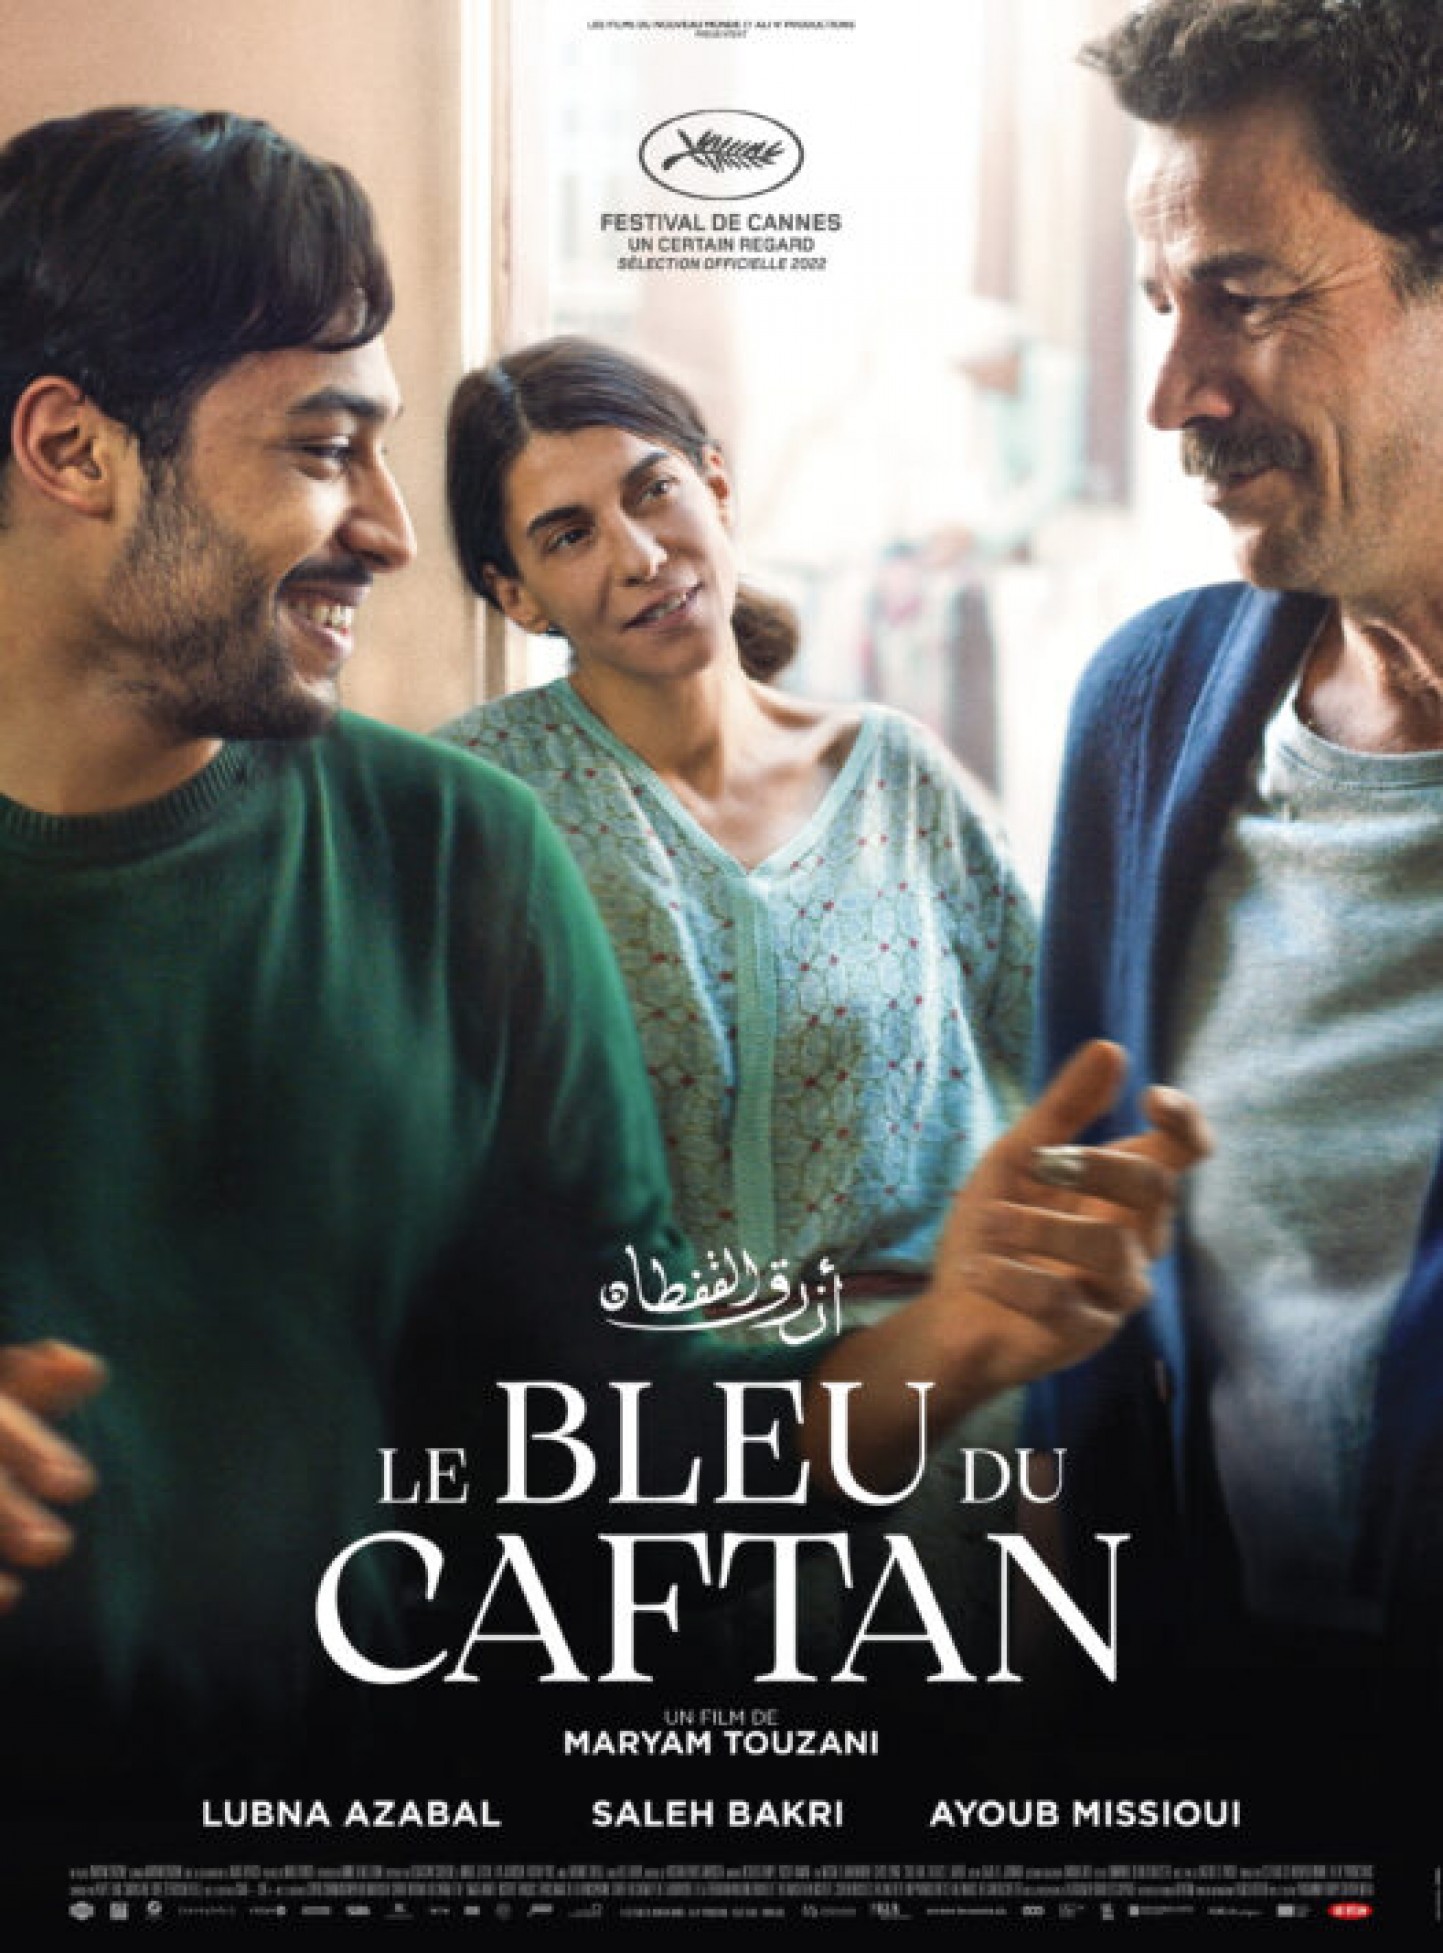 Cinéma : Le Bleu du Caftan